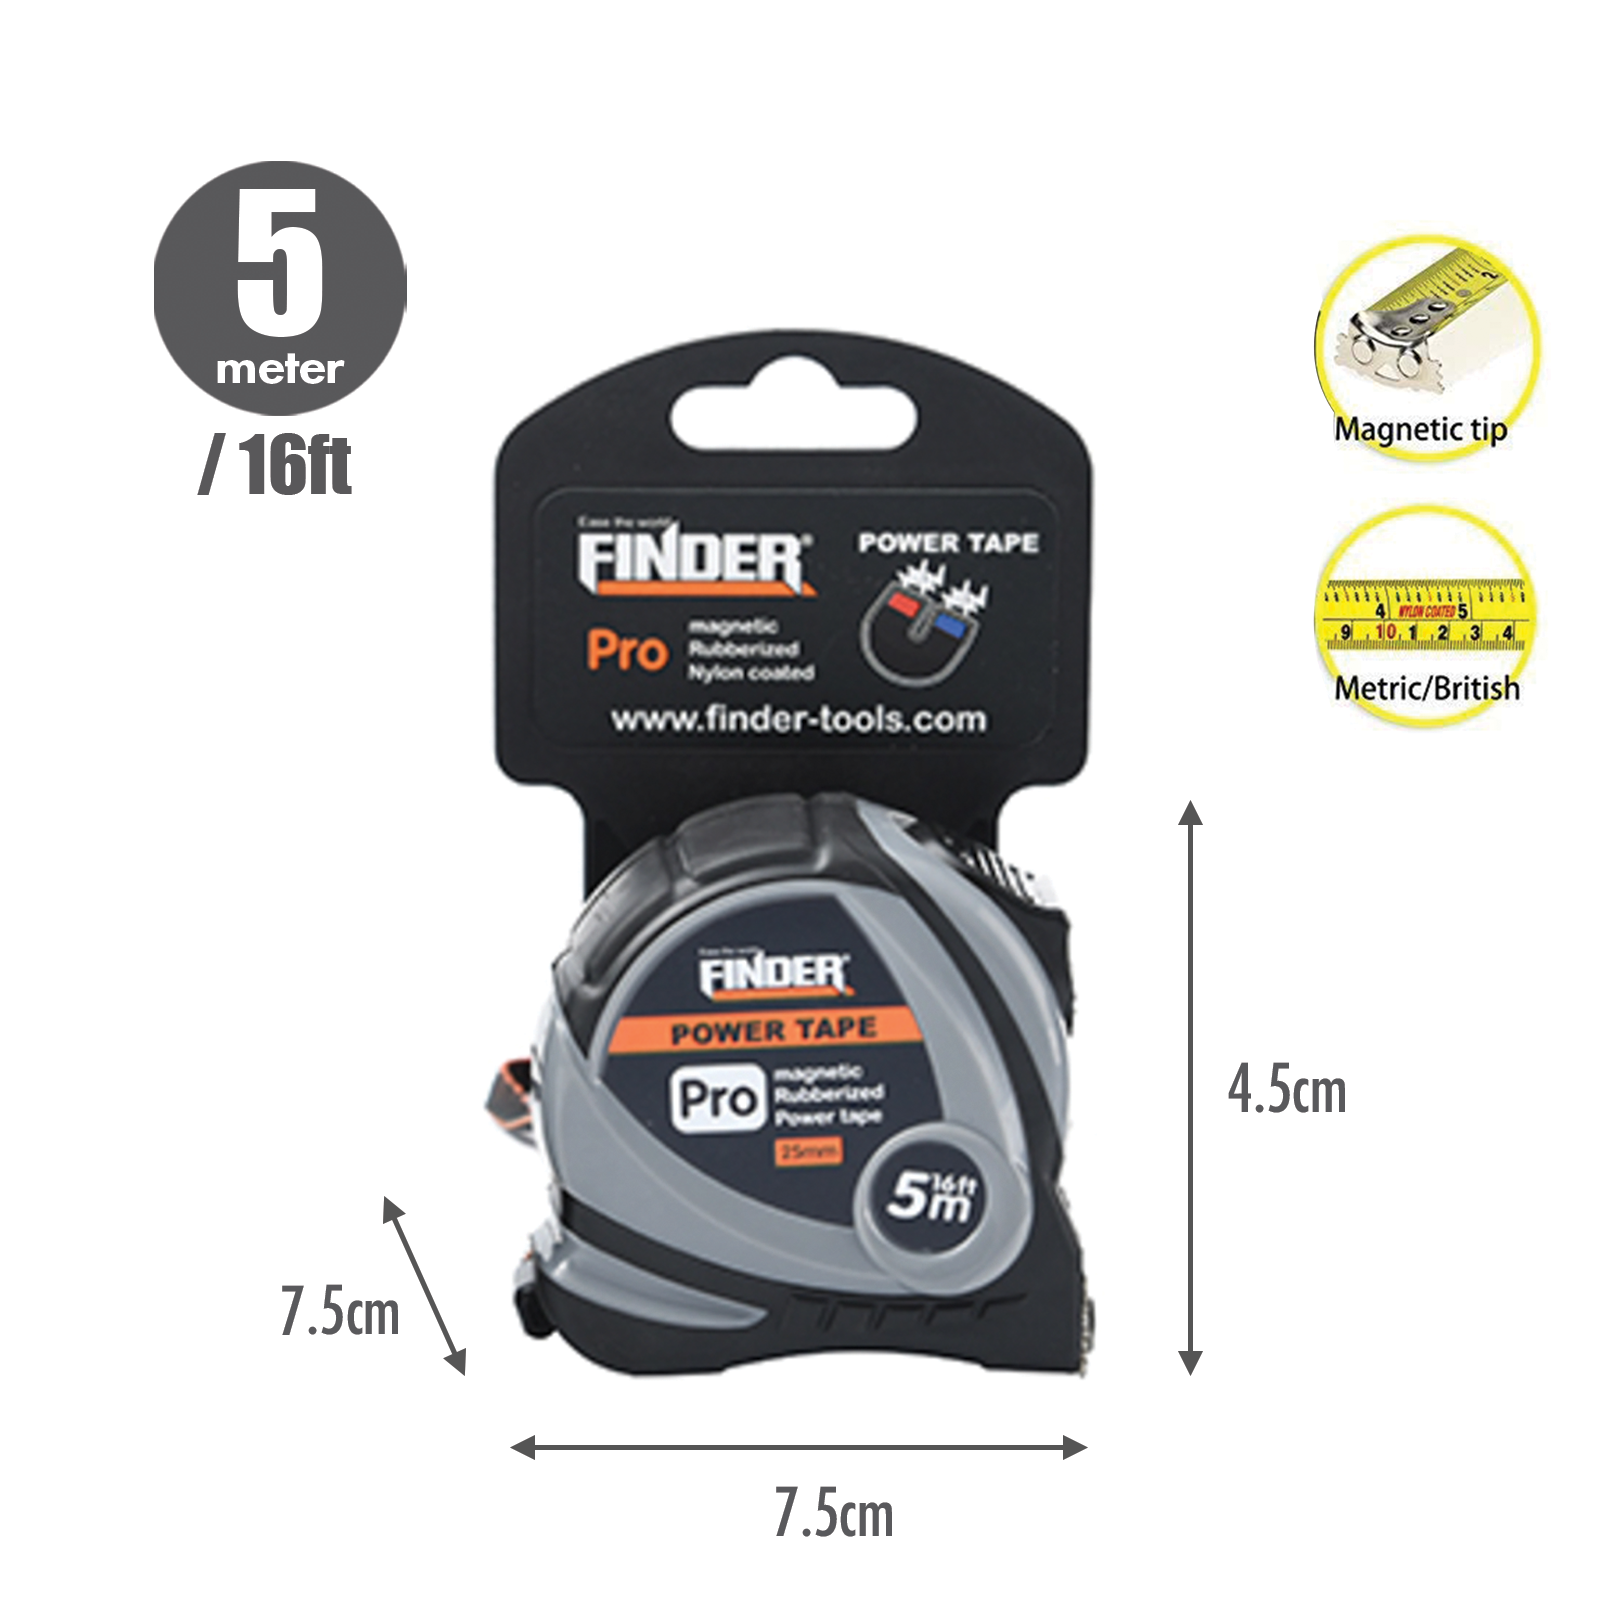 FINDER - Measuring Tape (Metric & British System) (5 Meter)